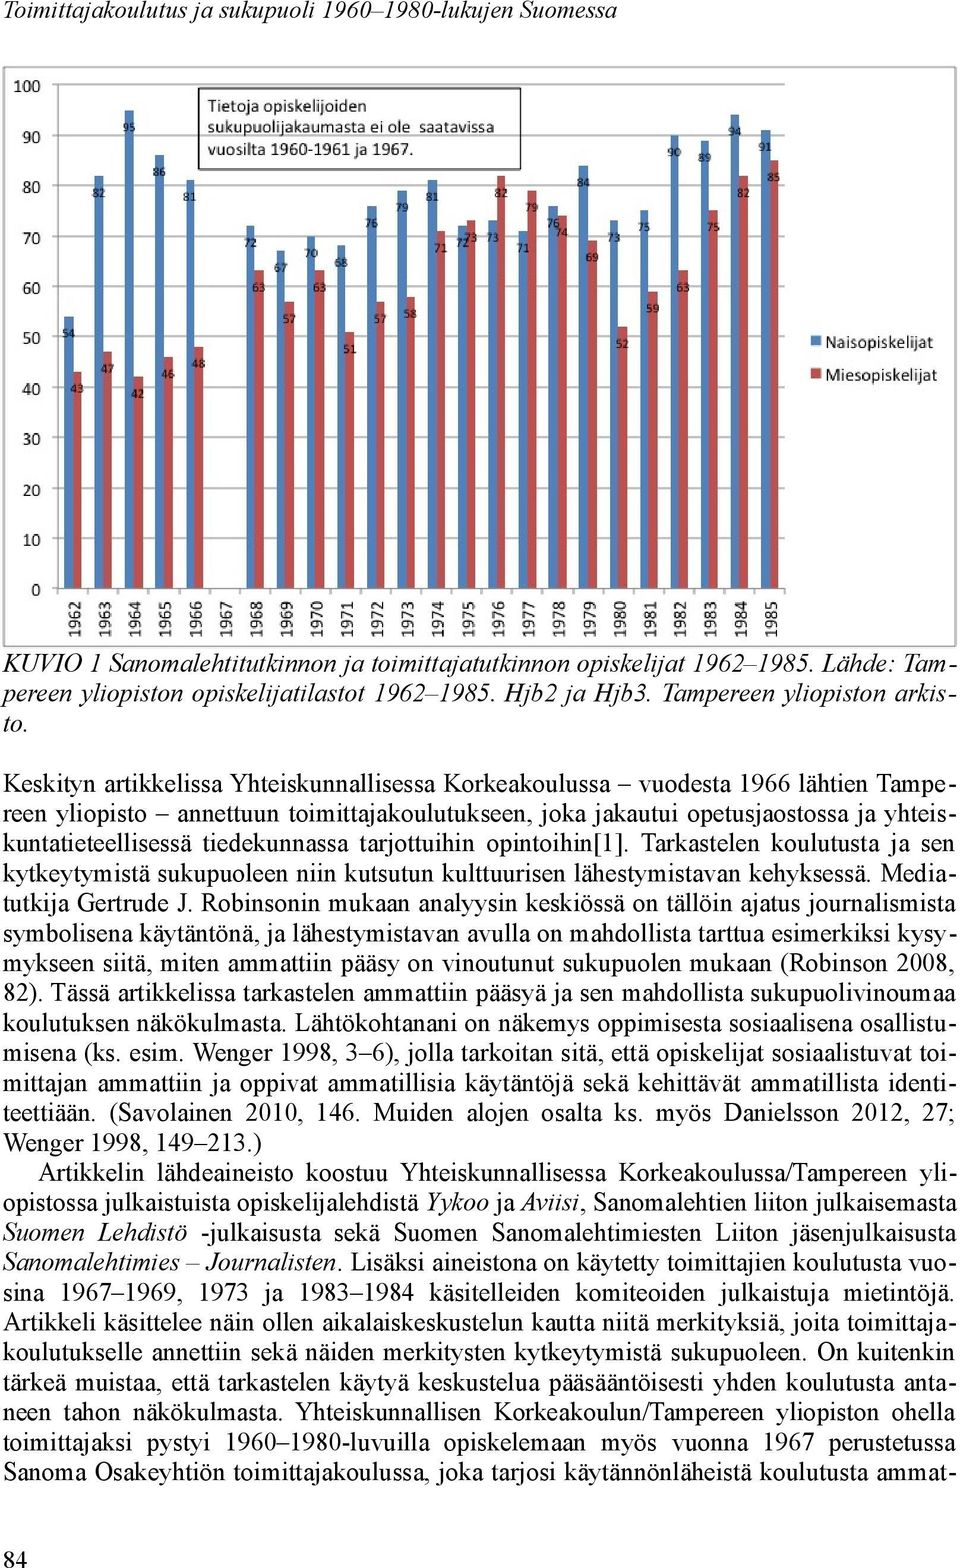 Keskityn artikkelissa Yhteiskunnallisessa Korkeakoulussa vuodesta 1966 lähtien Tampereen yliopisto annettuun toimittajakoulutukseen, joka jakautui opetusjaostossa ja yhteiskuntatieteellisessä